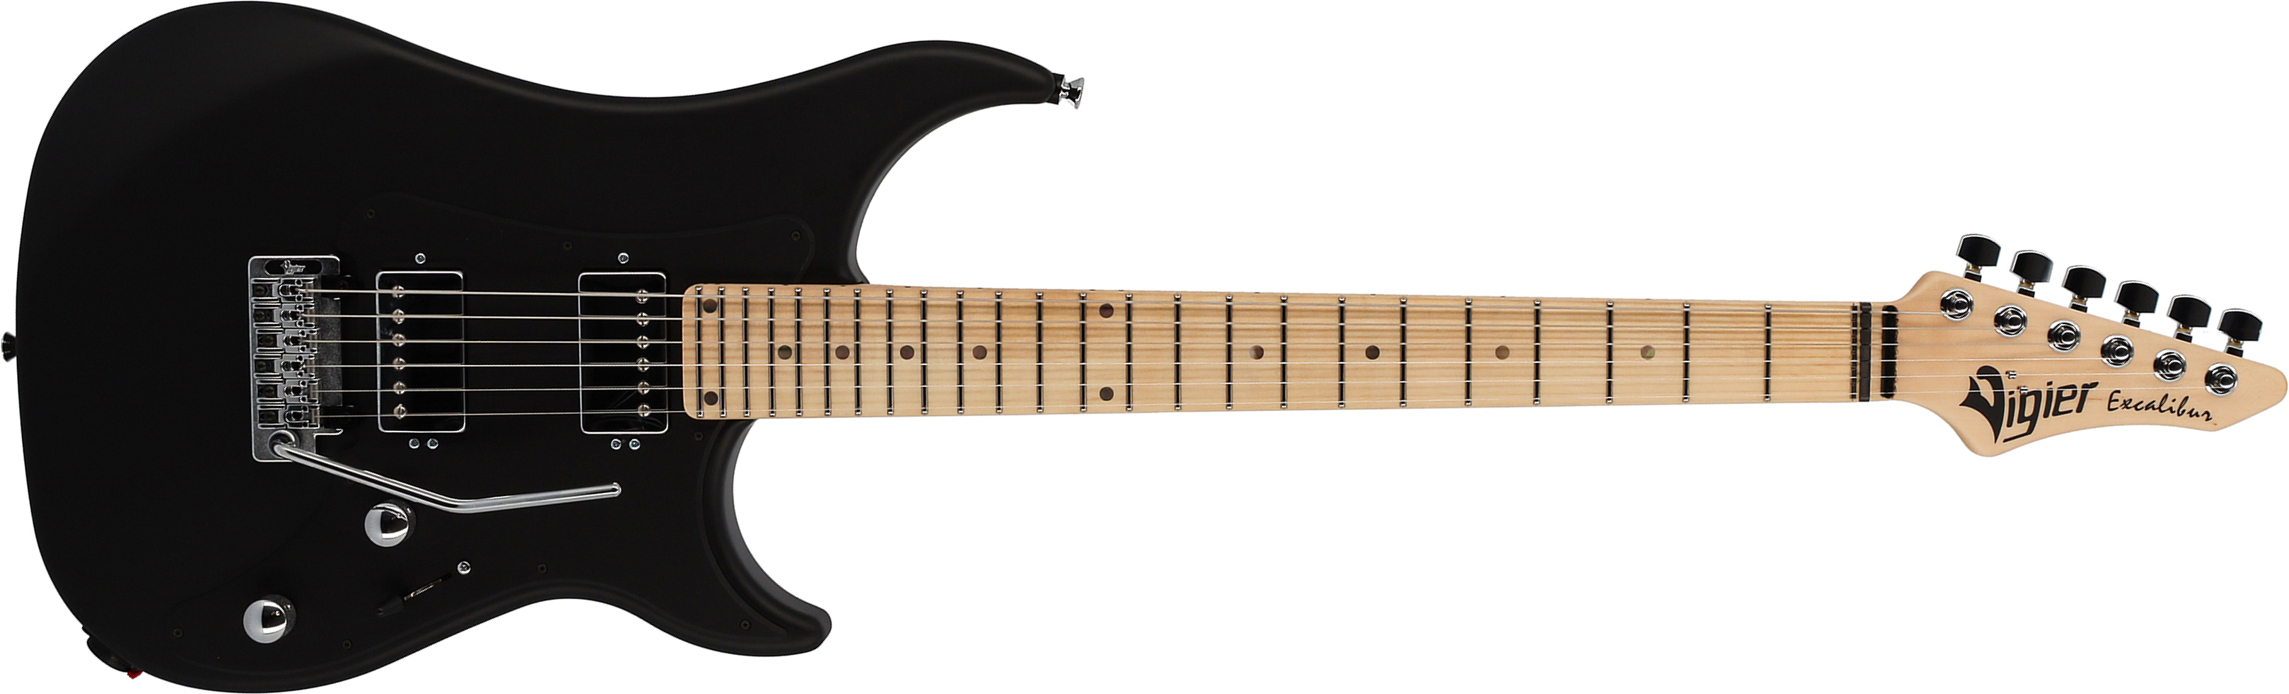 Vigier Excalibur Indus 2h Trem Mn - Black Matte - Guitarra eléctrica de doble corte. - Main picture